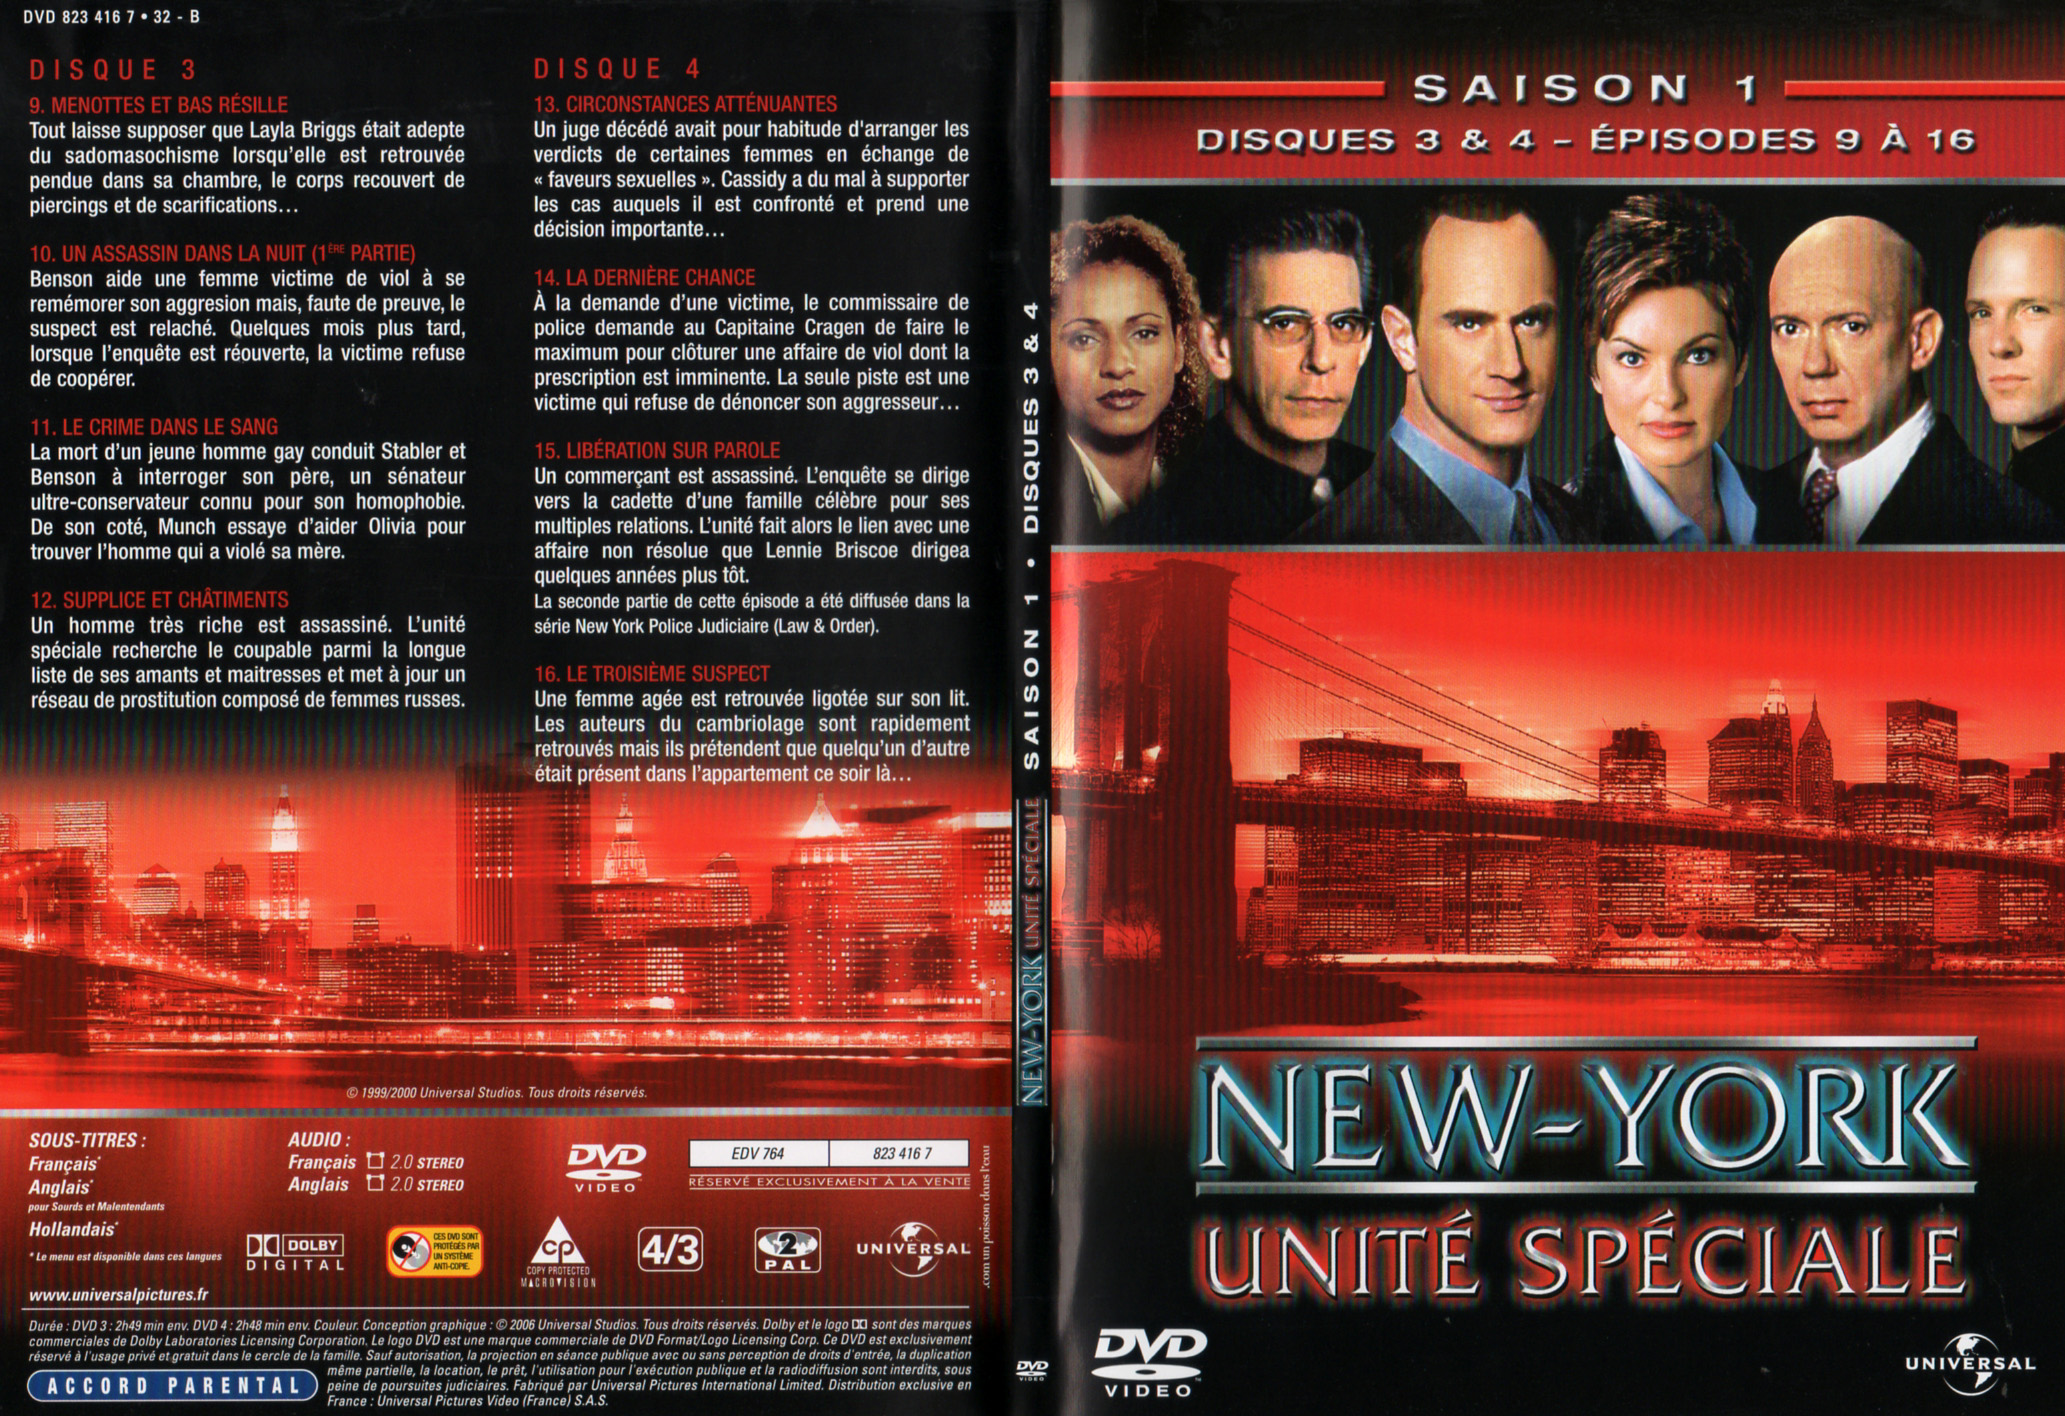 Jaquette DVD New York unit spciale saison 1 DVD 2